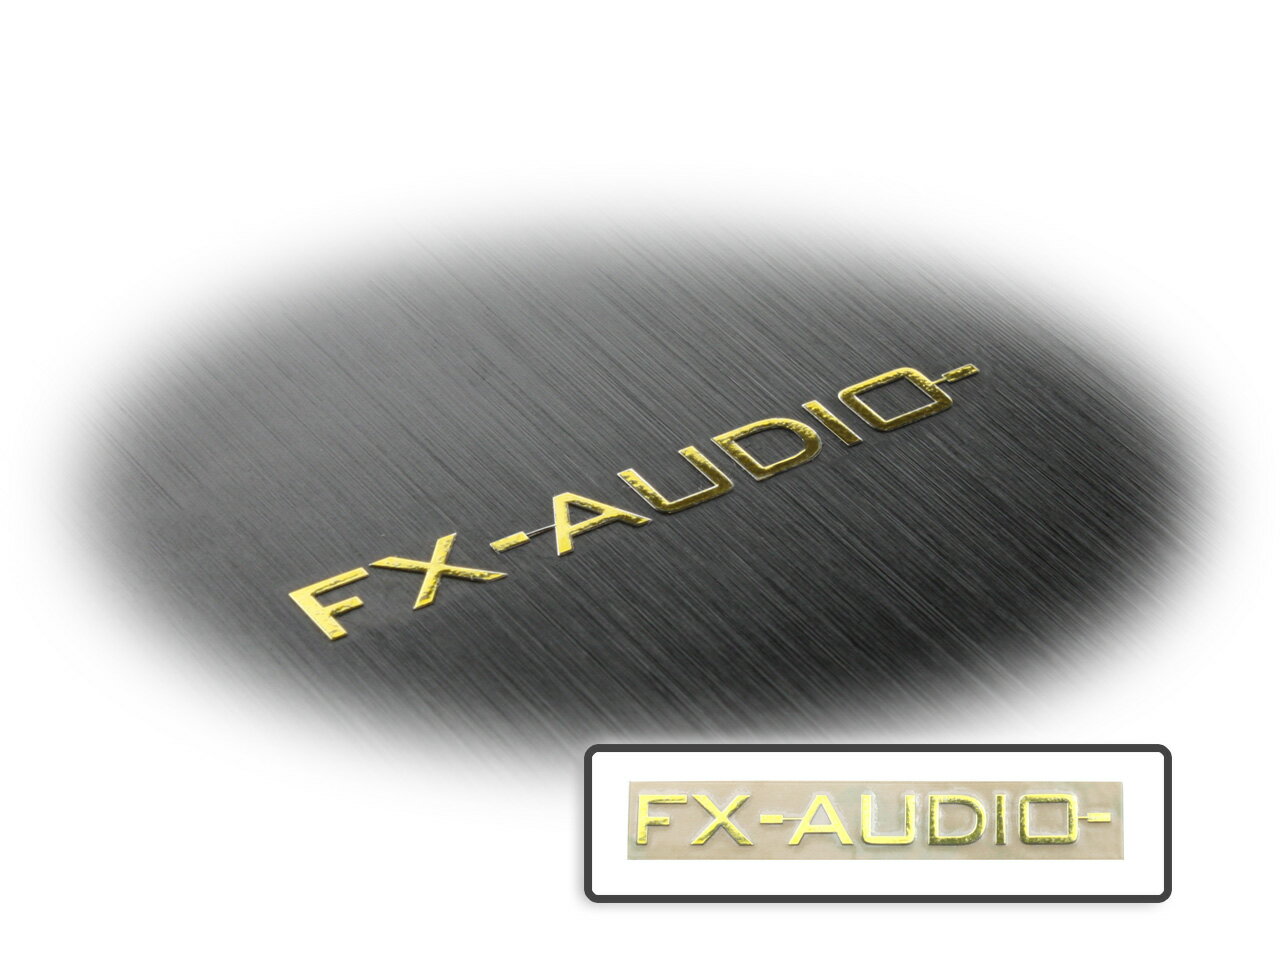 FX-AUDIO- エンブレム[ゴールド]1枚 ニッケル銅合金 メッキ仕上げ 立体 シールタイプ